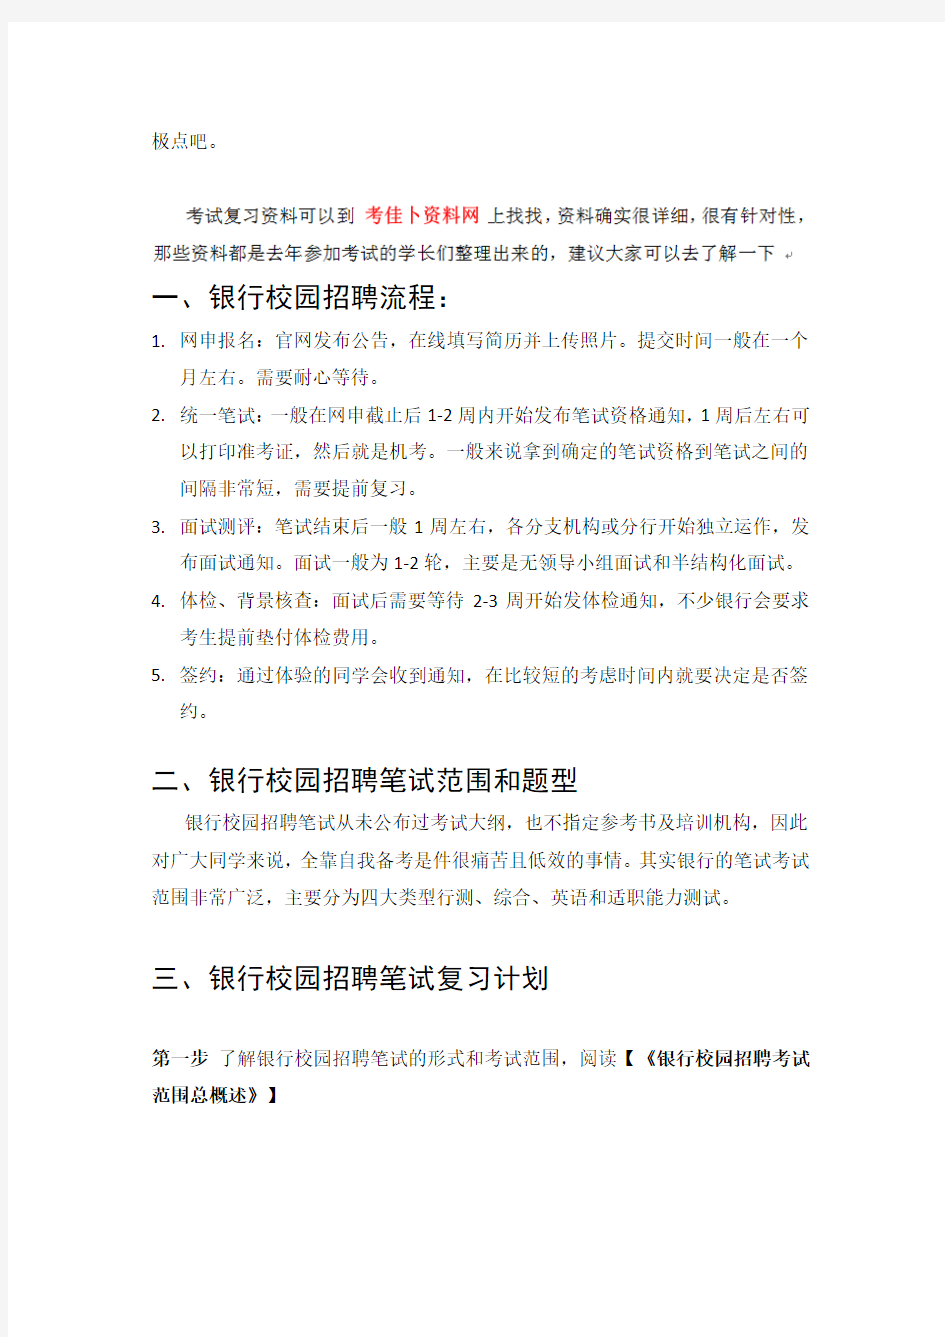 中国农业银行2015年校园招聘考试笔试内容专用题库